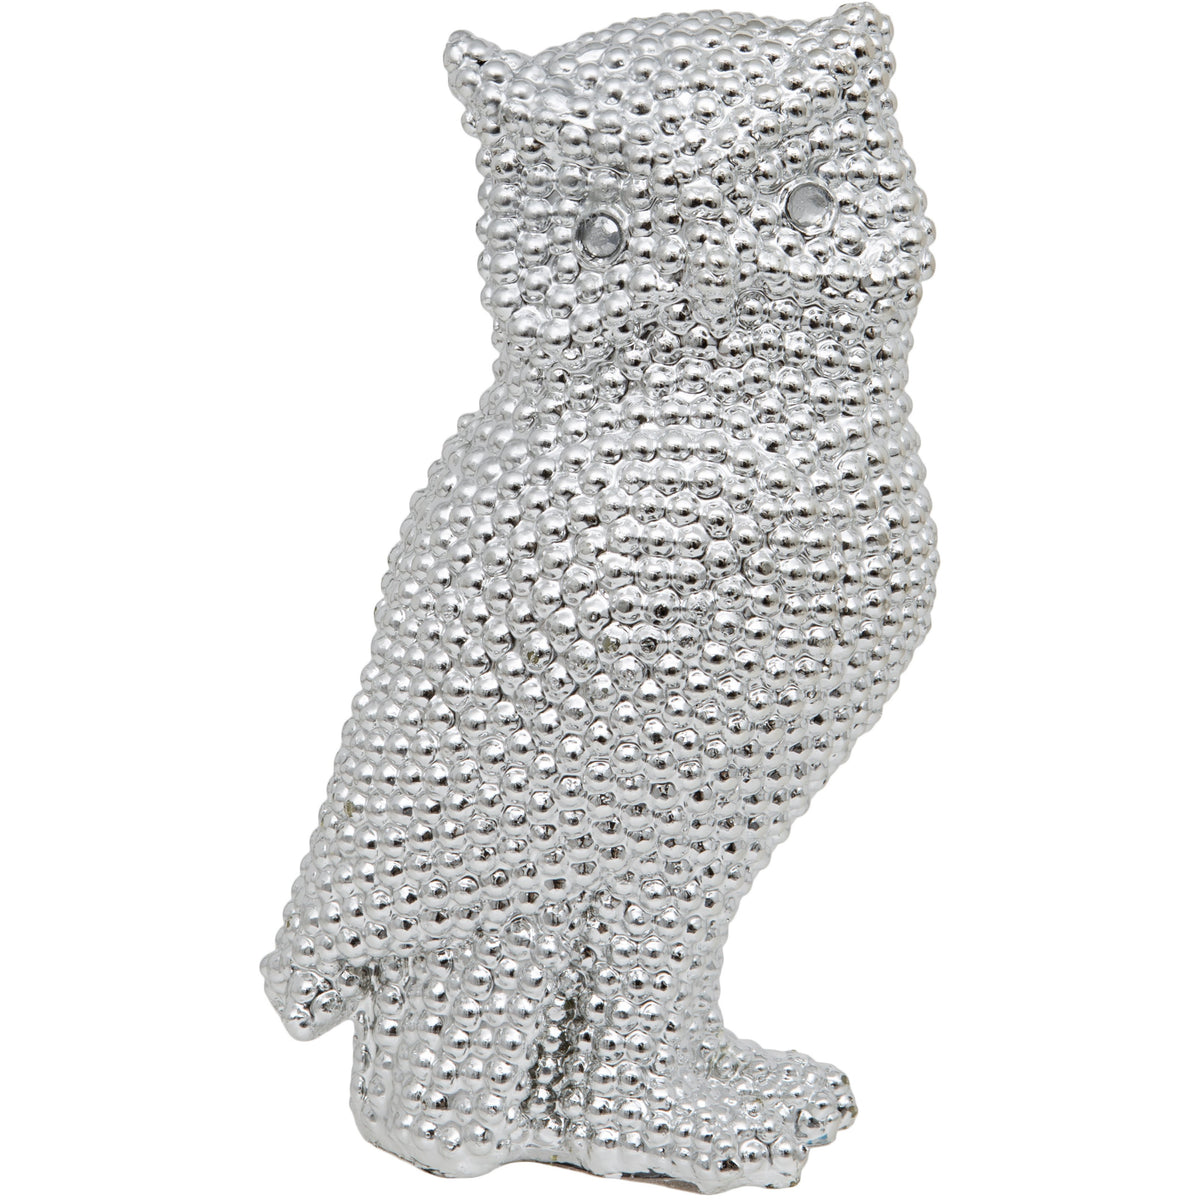 Silver Owl Ornament